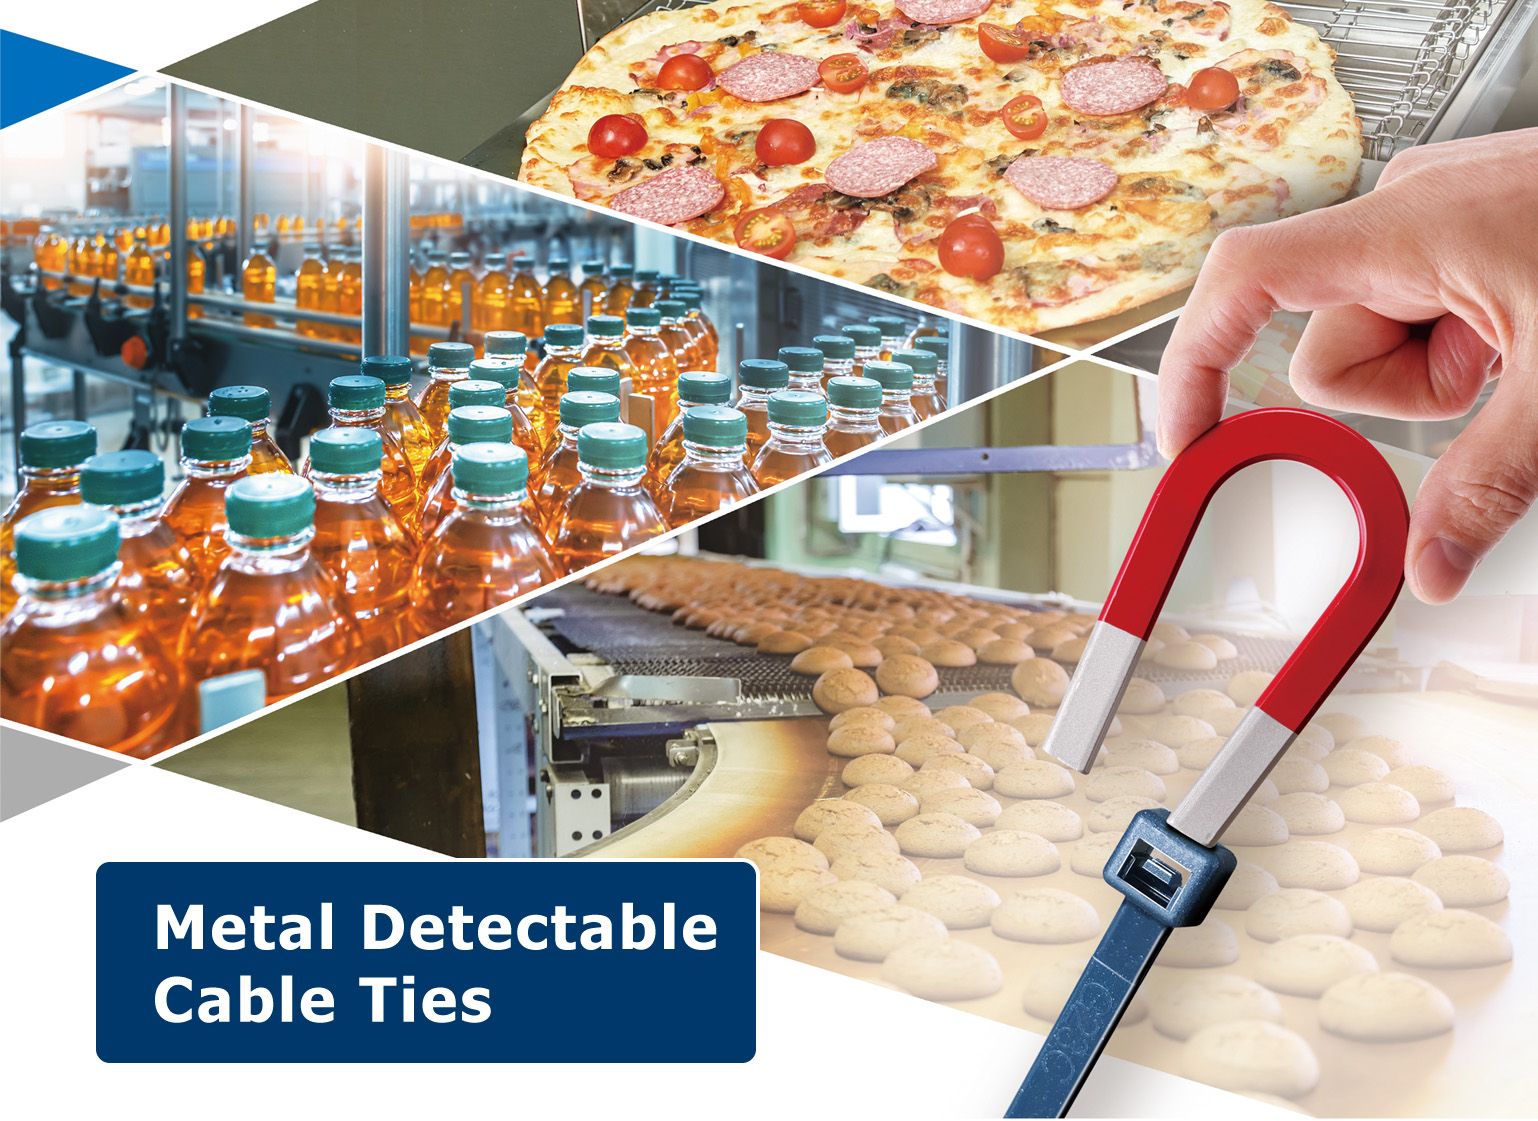 La brida de cable detectable de metal es ideal para las industrias de alimentos, bebidas, farmacéutica y cosmética